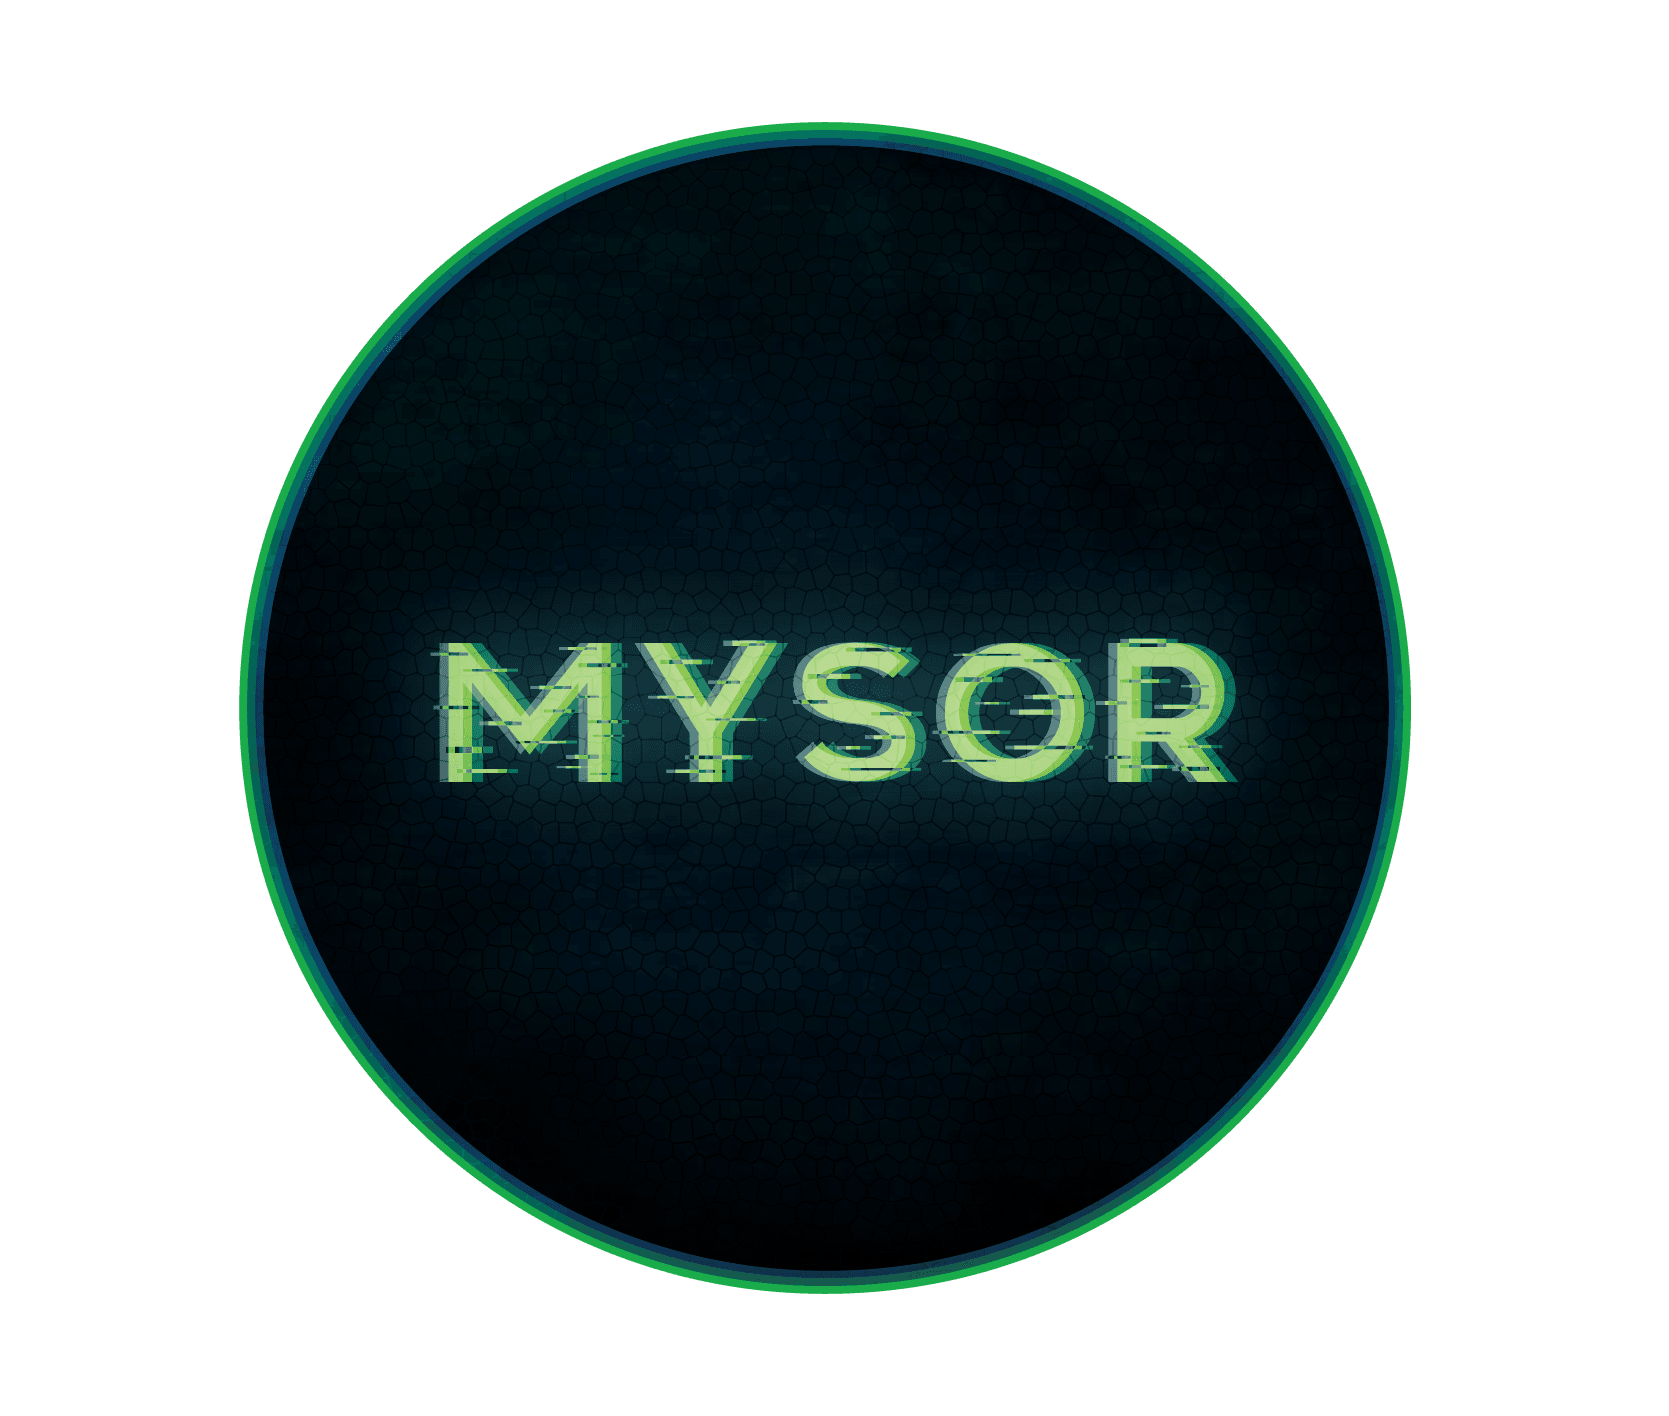 Mysor